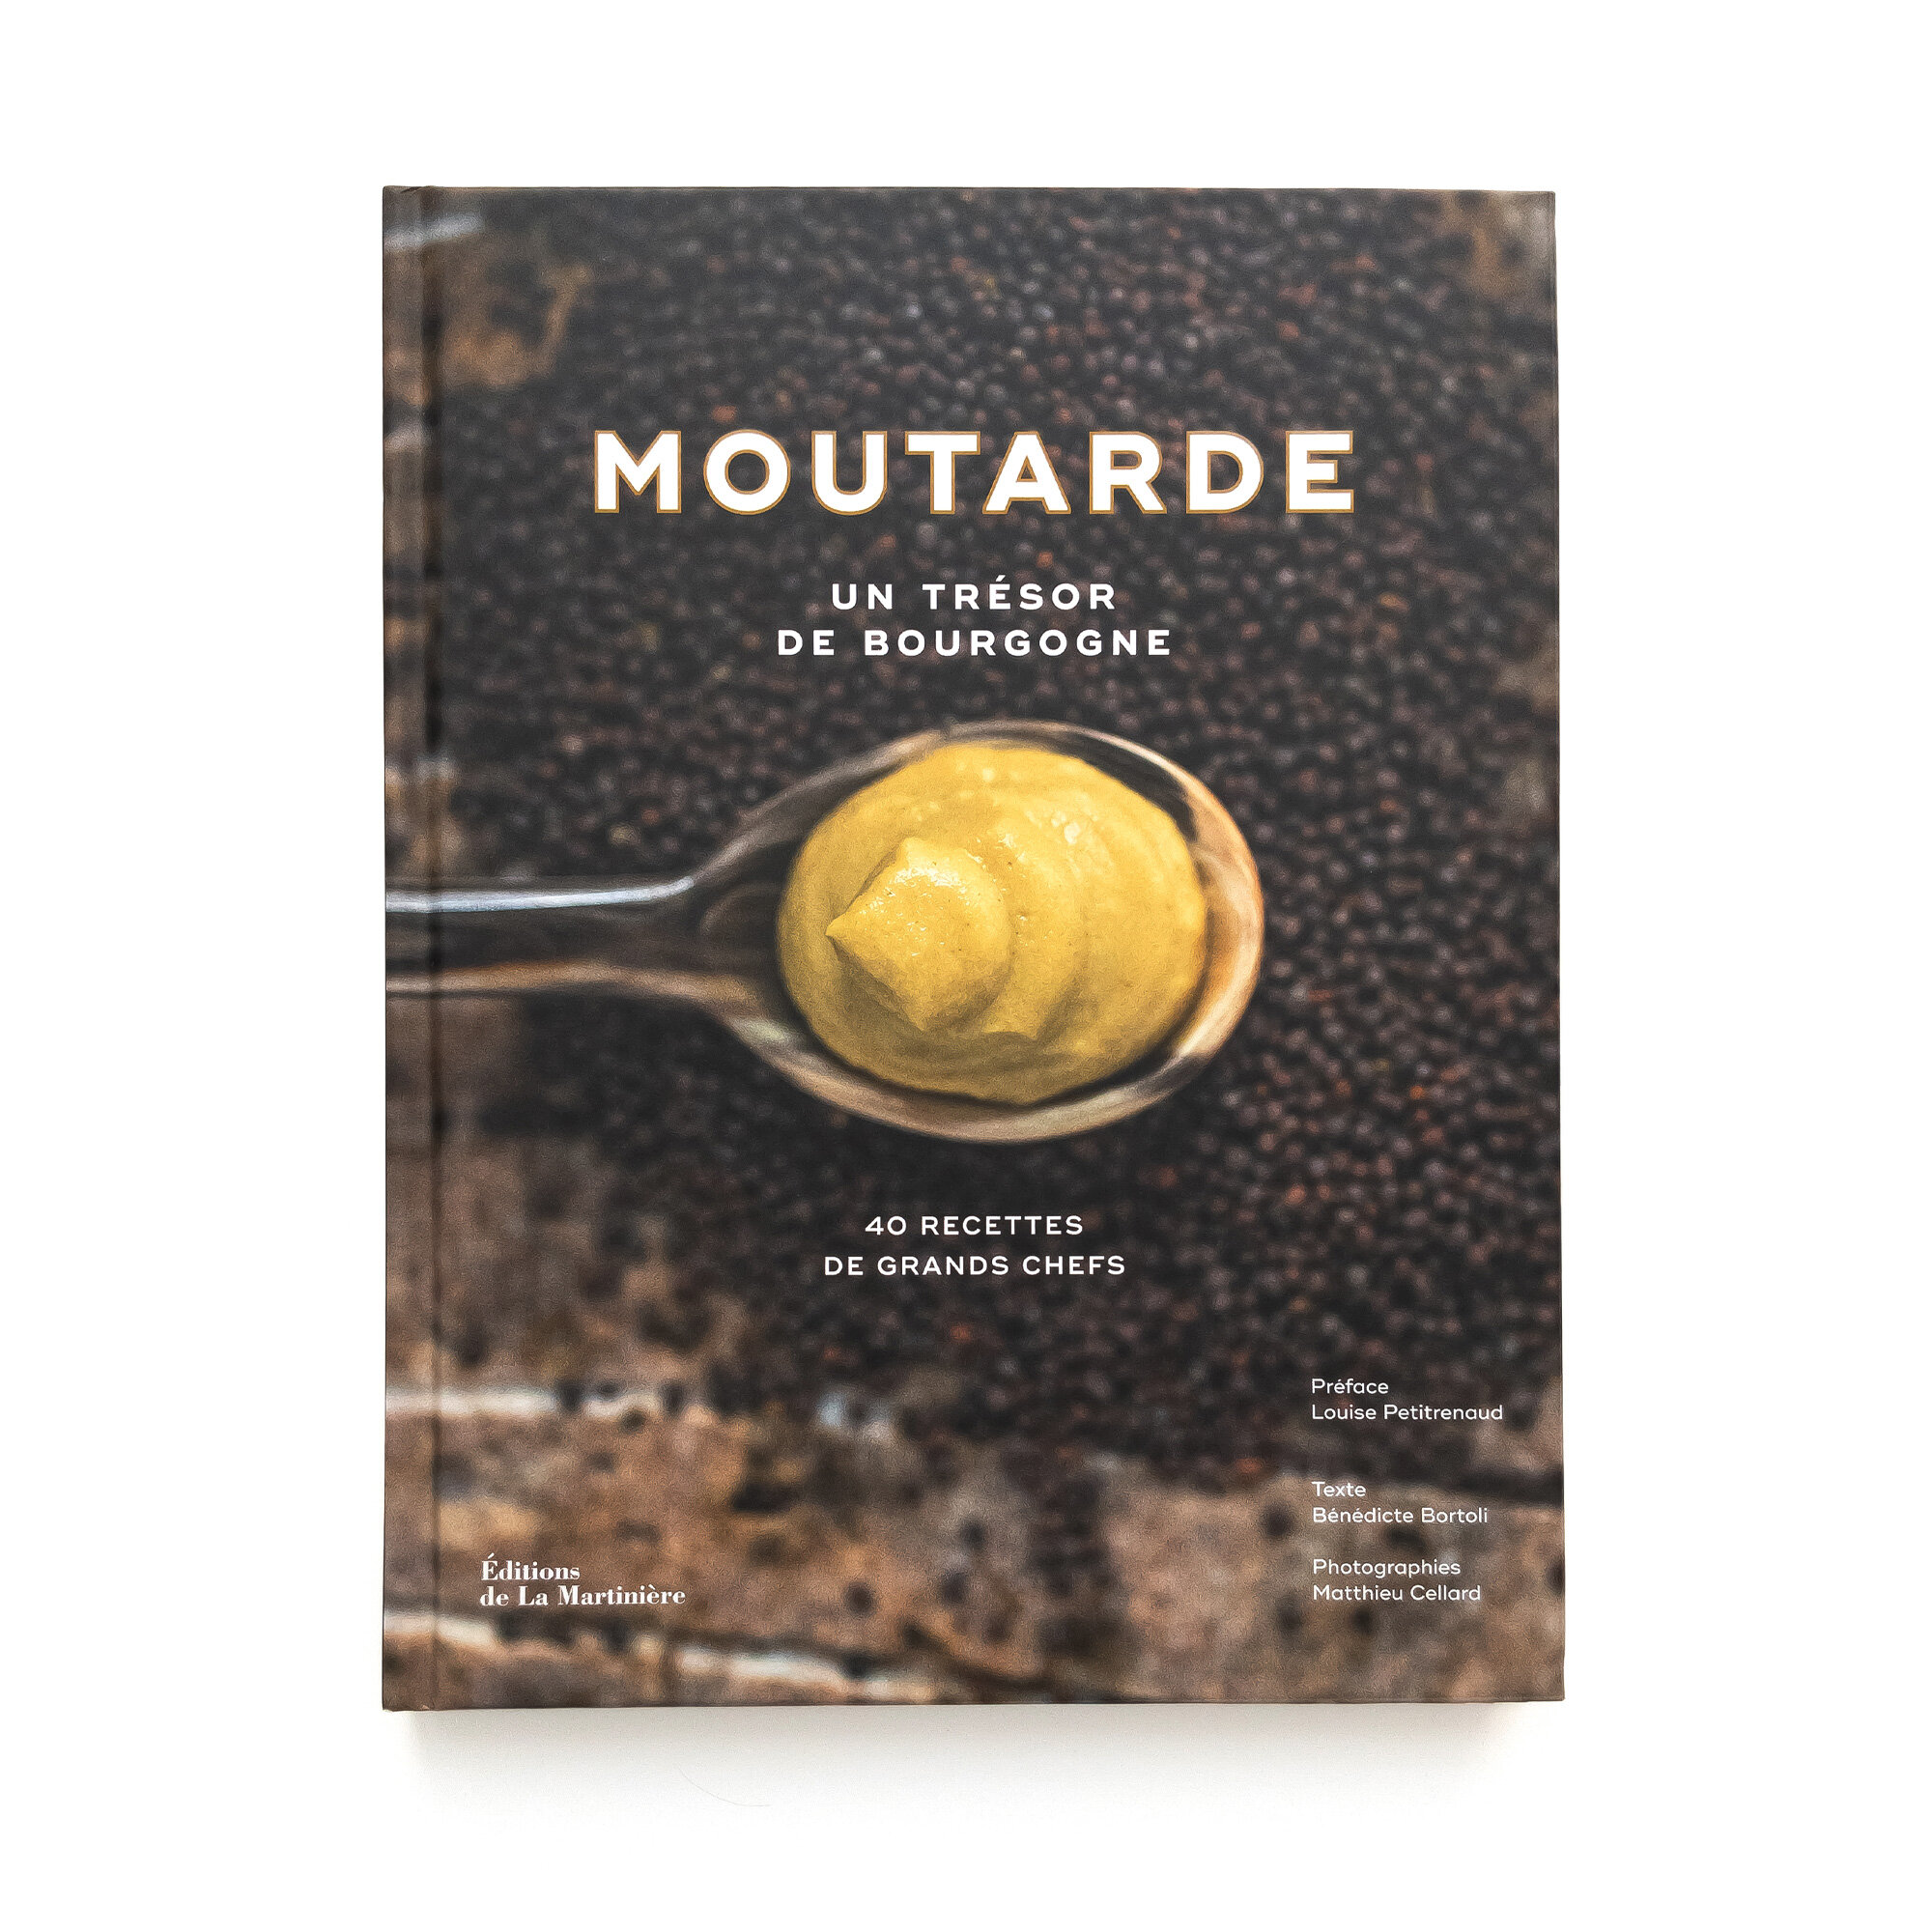   Moutarde  Un trésor de Bourgogne  Éditions de La Martinière 192 pages 